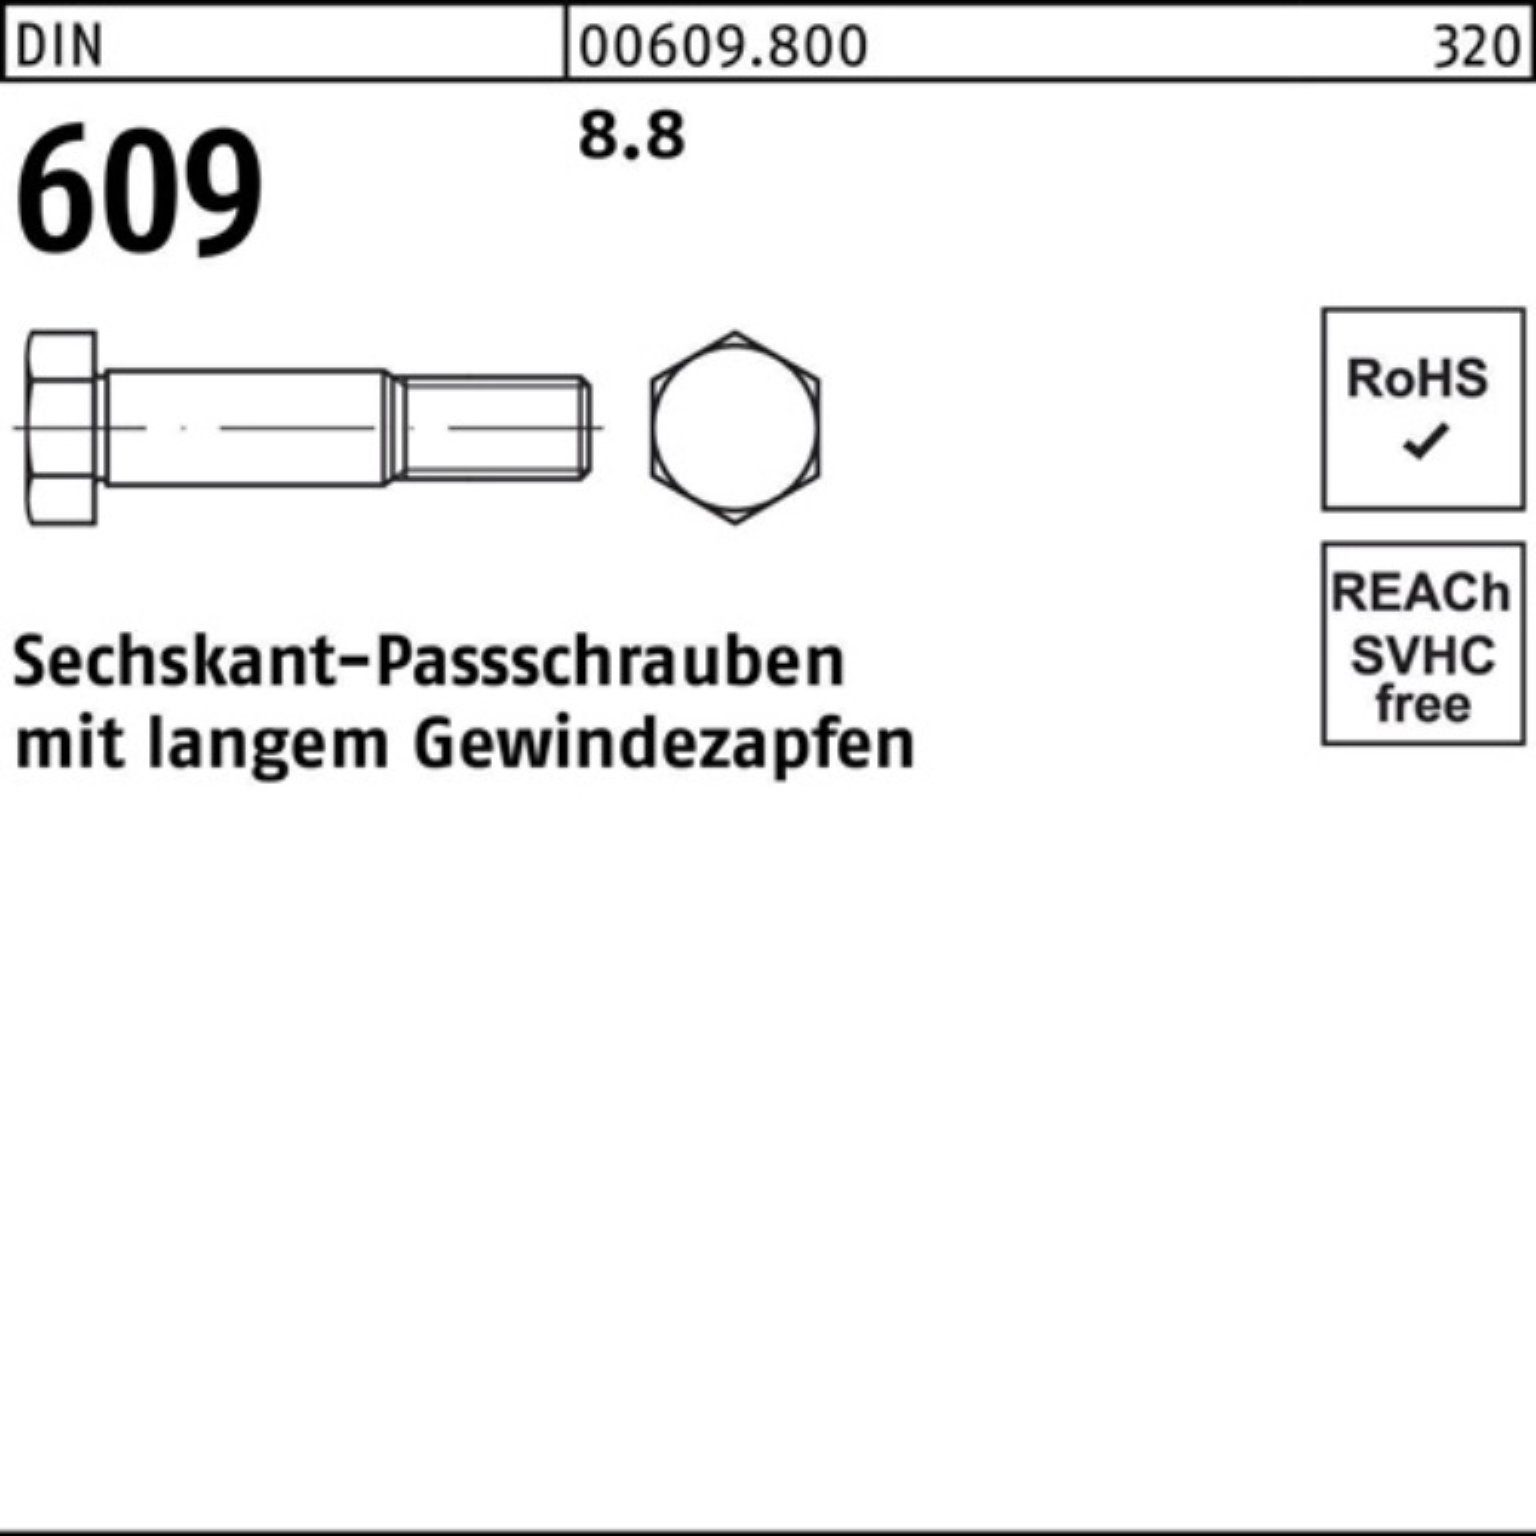 100er 609 Sechskantpassschraube M36x Schraube DIN Gewindezapfen Reyher Pack langem 100